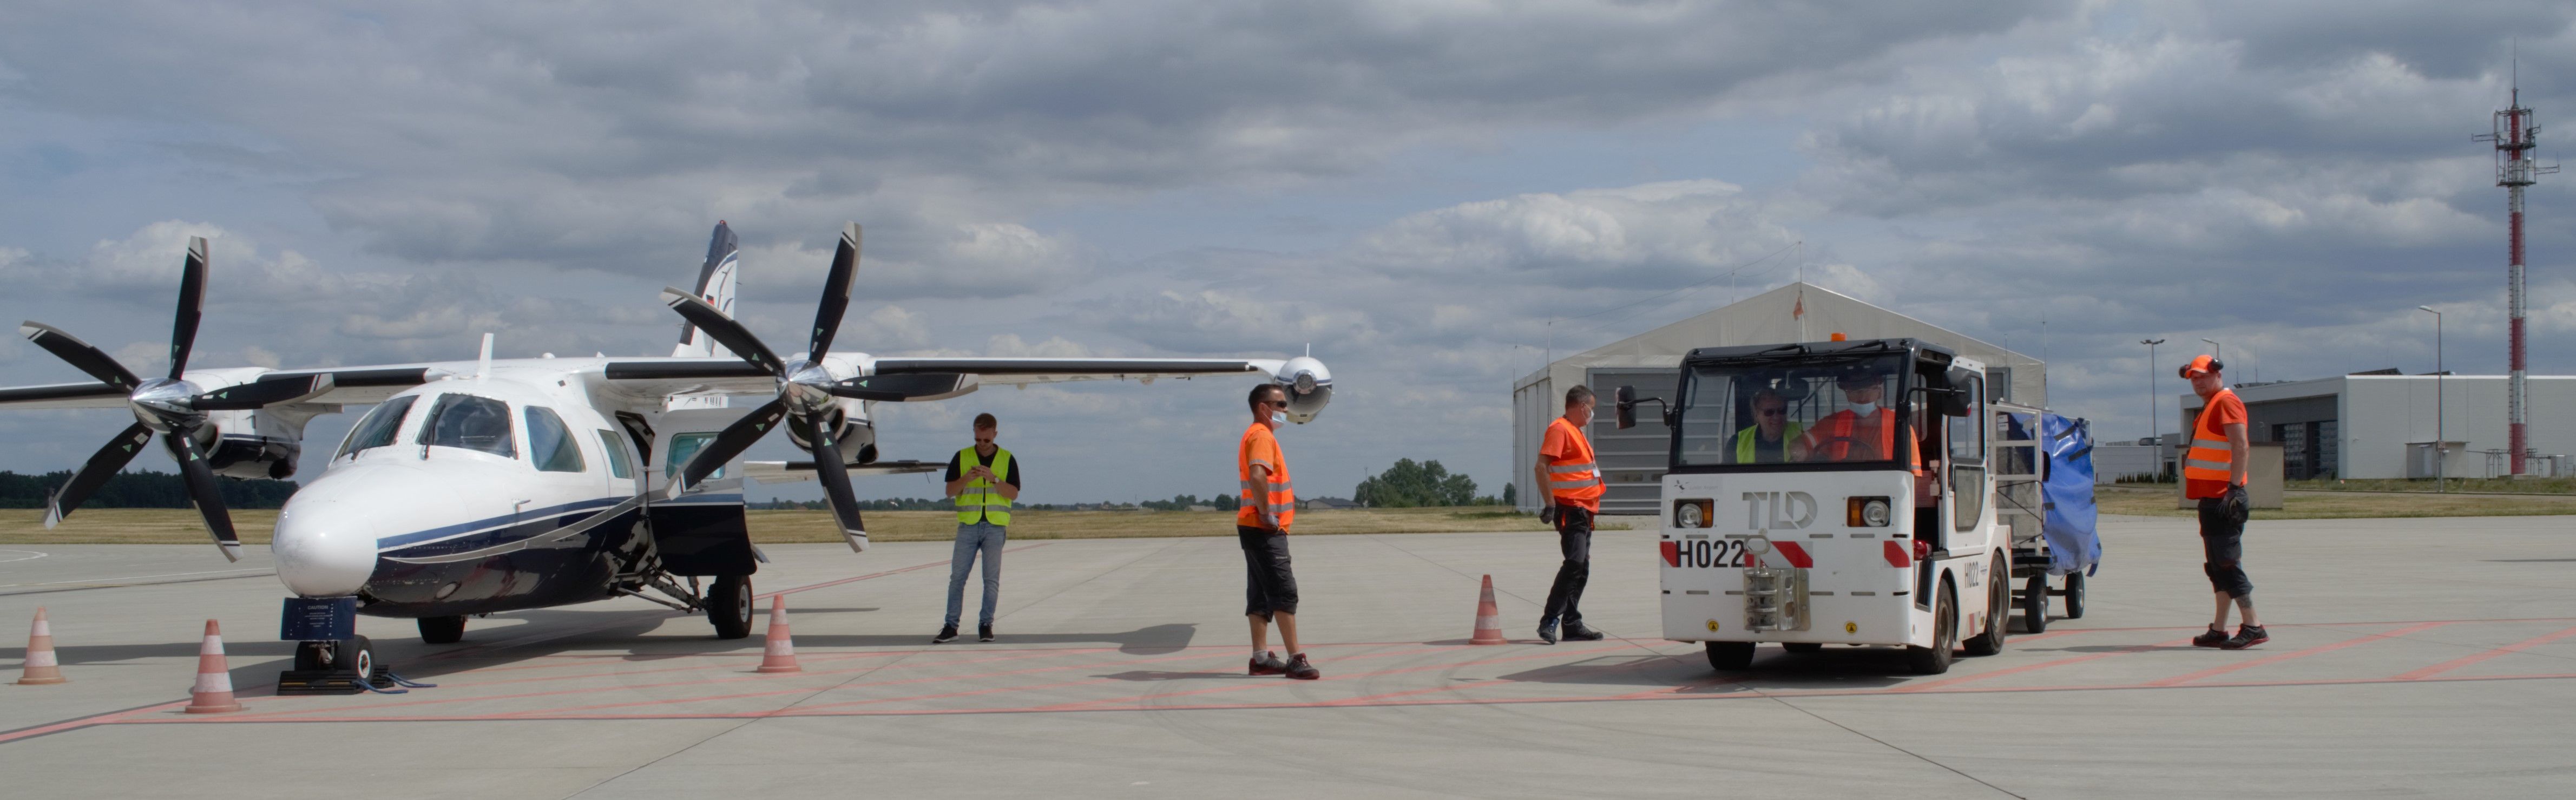 Klub Odpowiedzialnego Biznesu i kolejna operacja cargo w Porcie Lotniczym Lublin (zdjęcia)